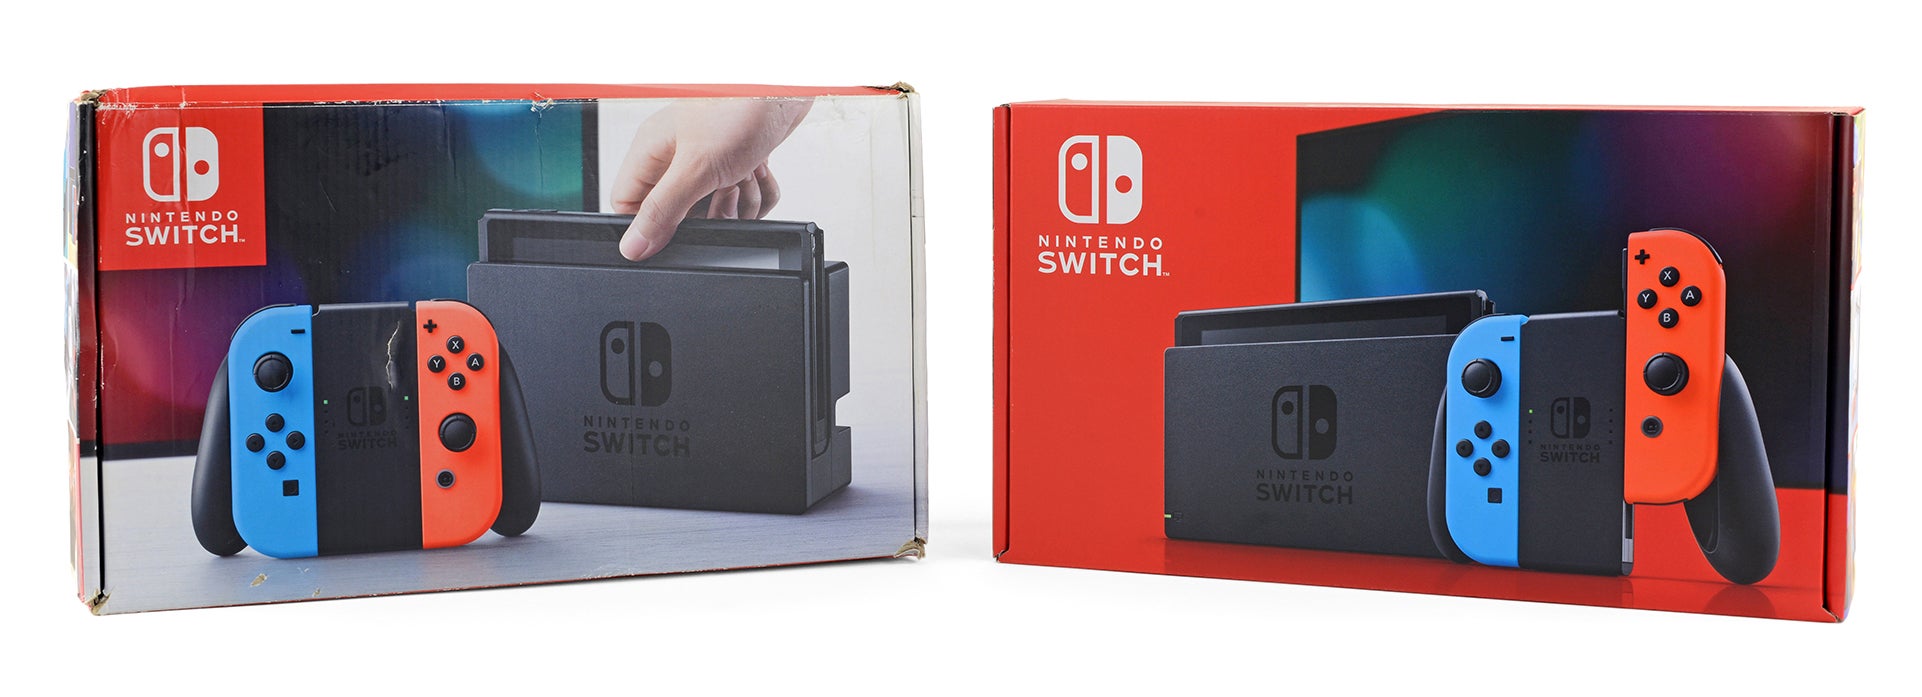 Nintendo switch почему. Nintendo Switch 2. Нинтендо свитч 2017. Коробка Нинтендо свитч 2. Nintendo Switch v1.